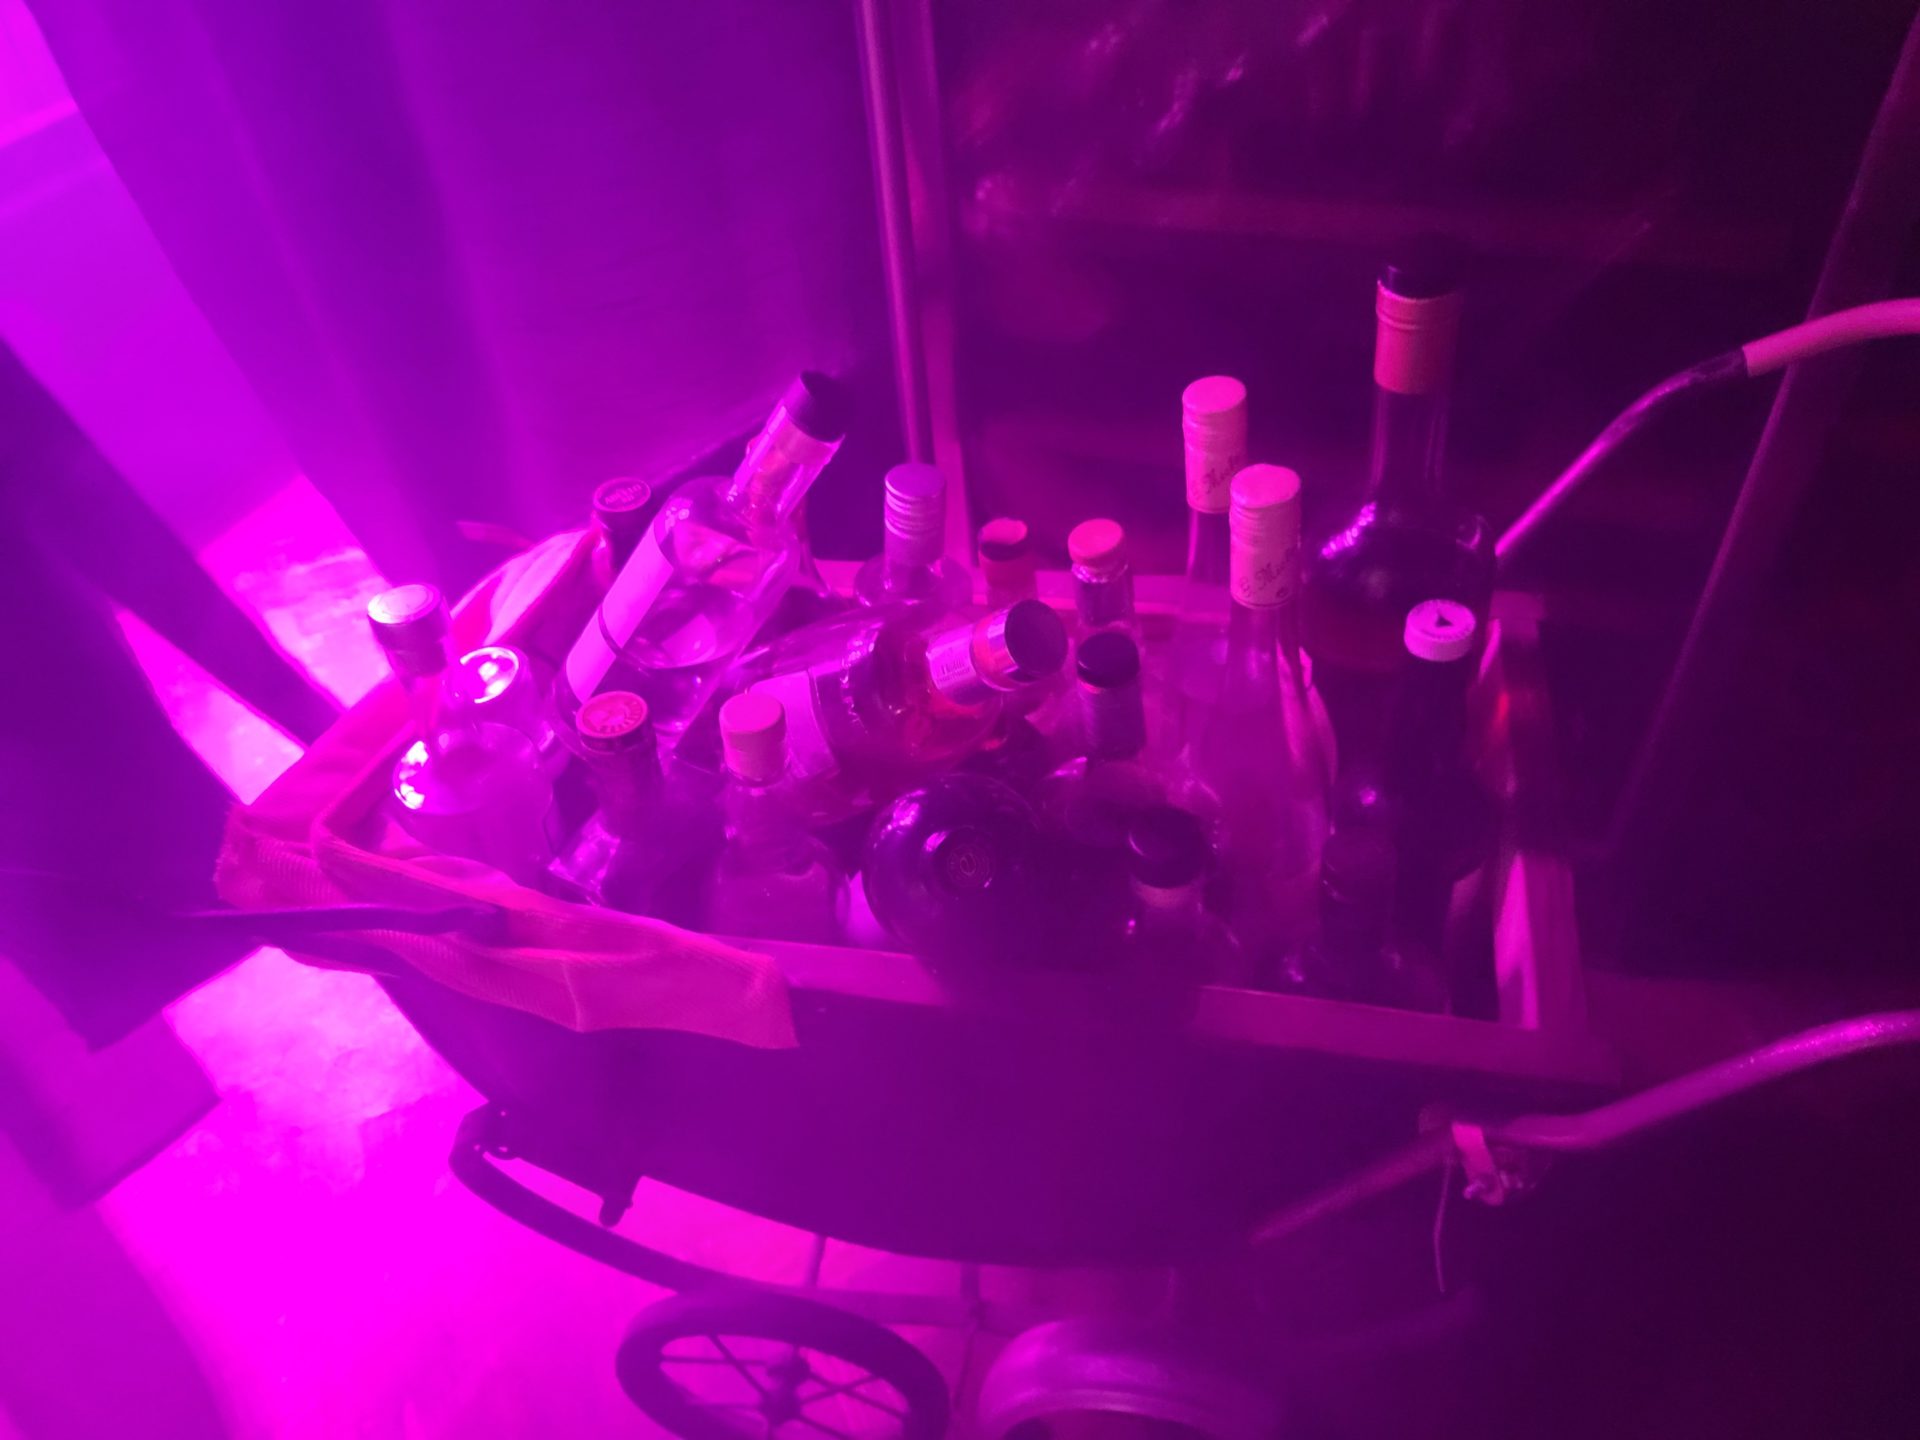 a cart full of bottles